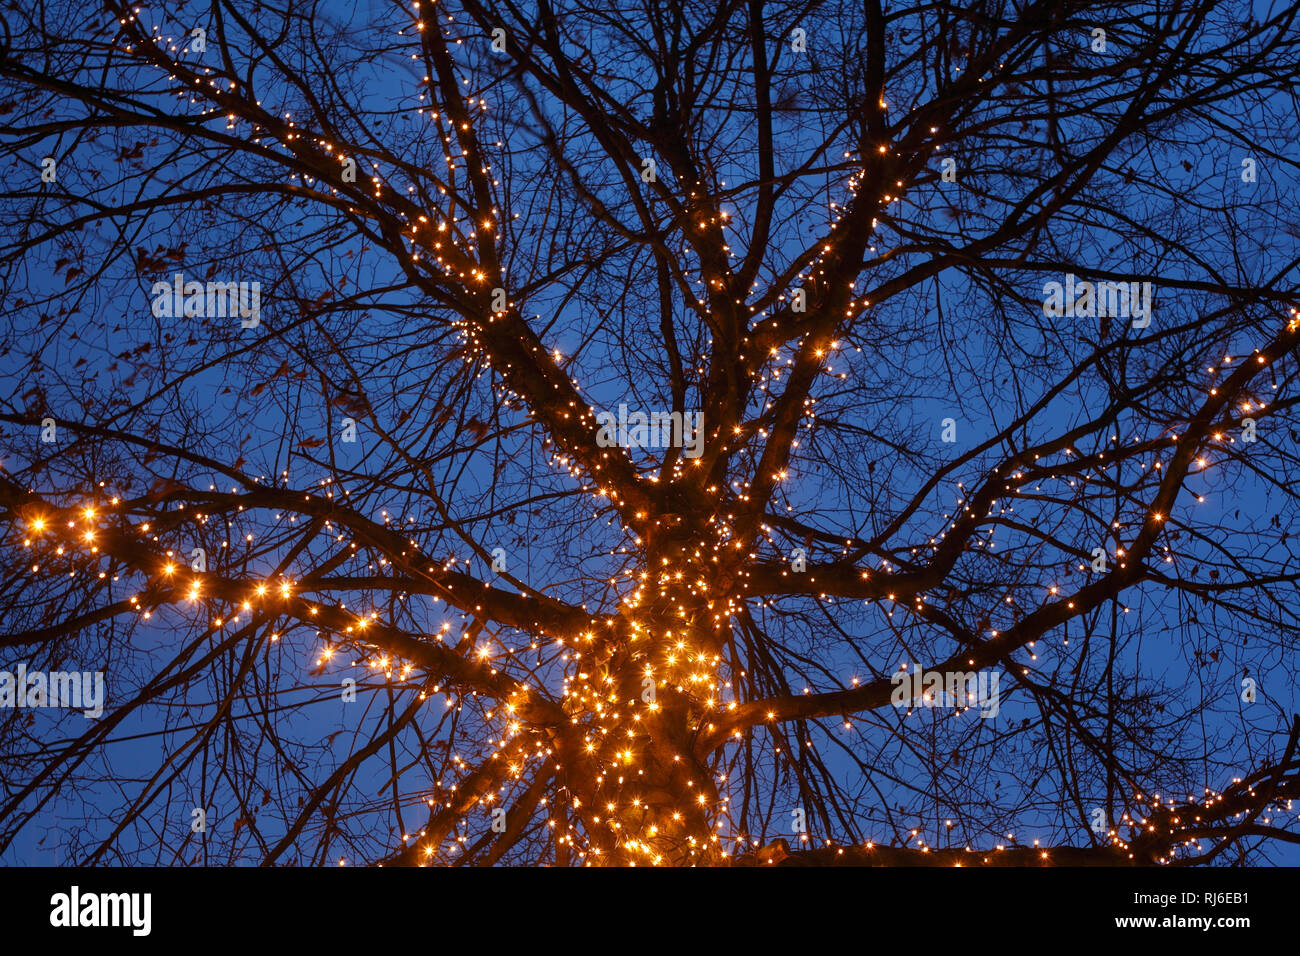 Weihnachtsbeleuchtung an einem Baum in der Abenddämmerung, Viertel, Bremen, Deutschland, Europa Stock Photo